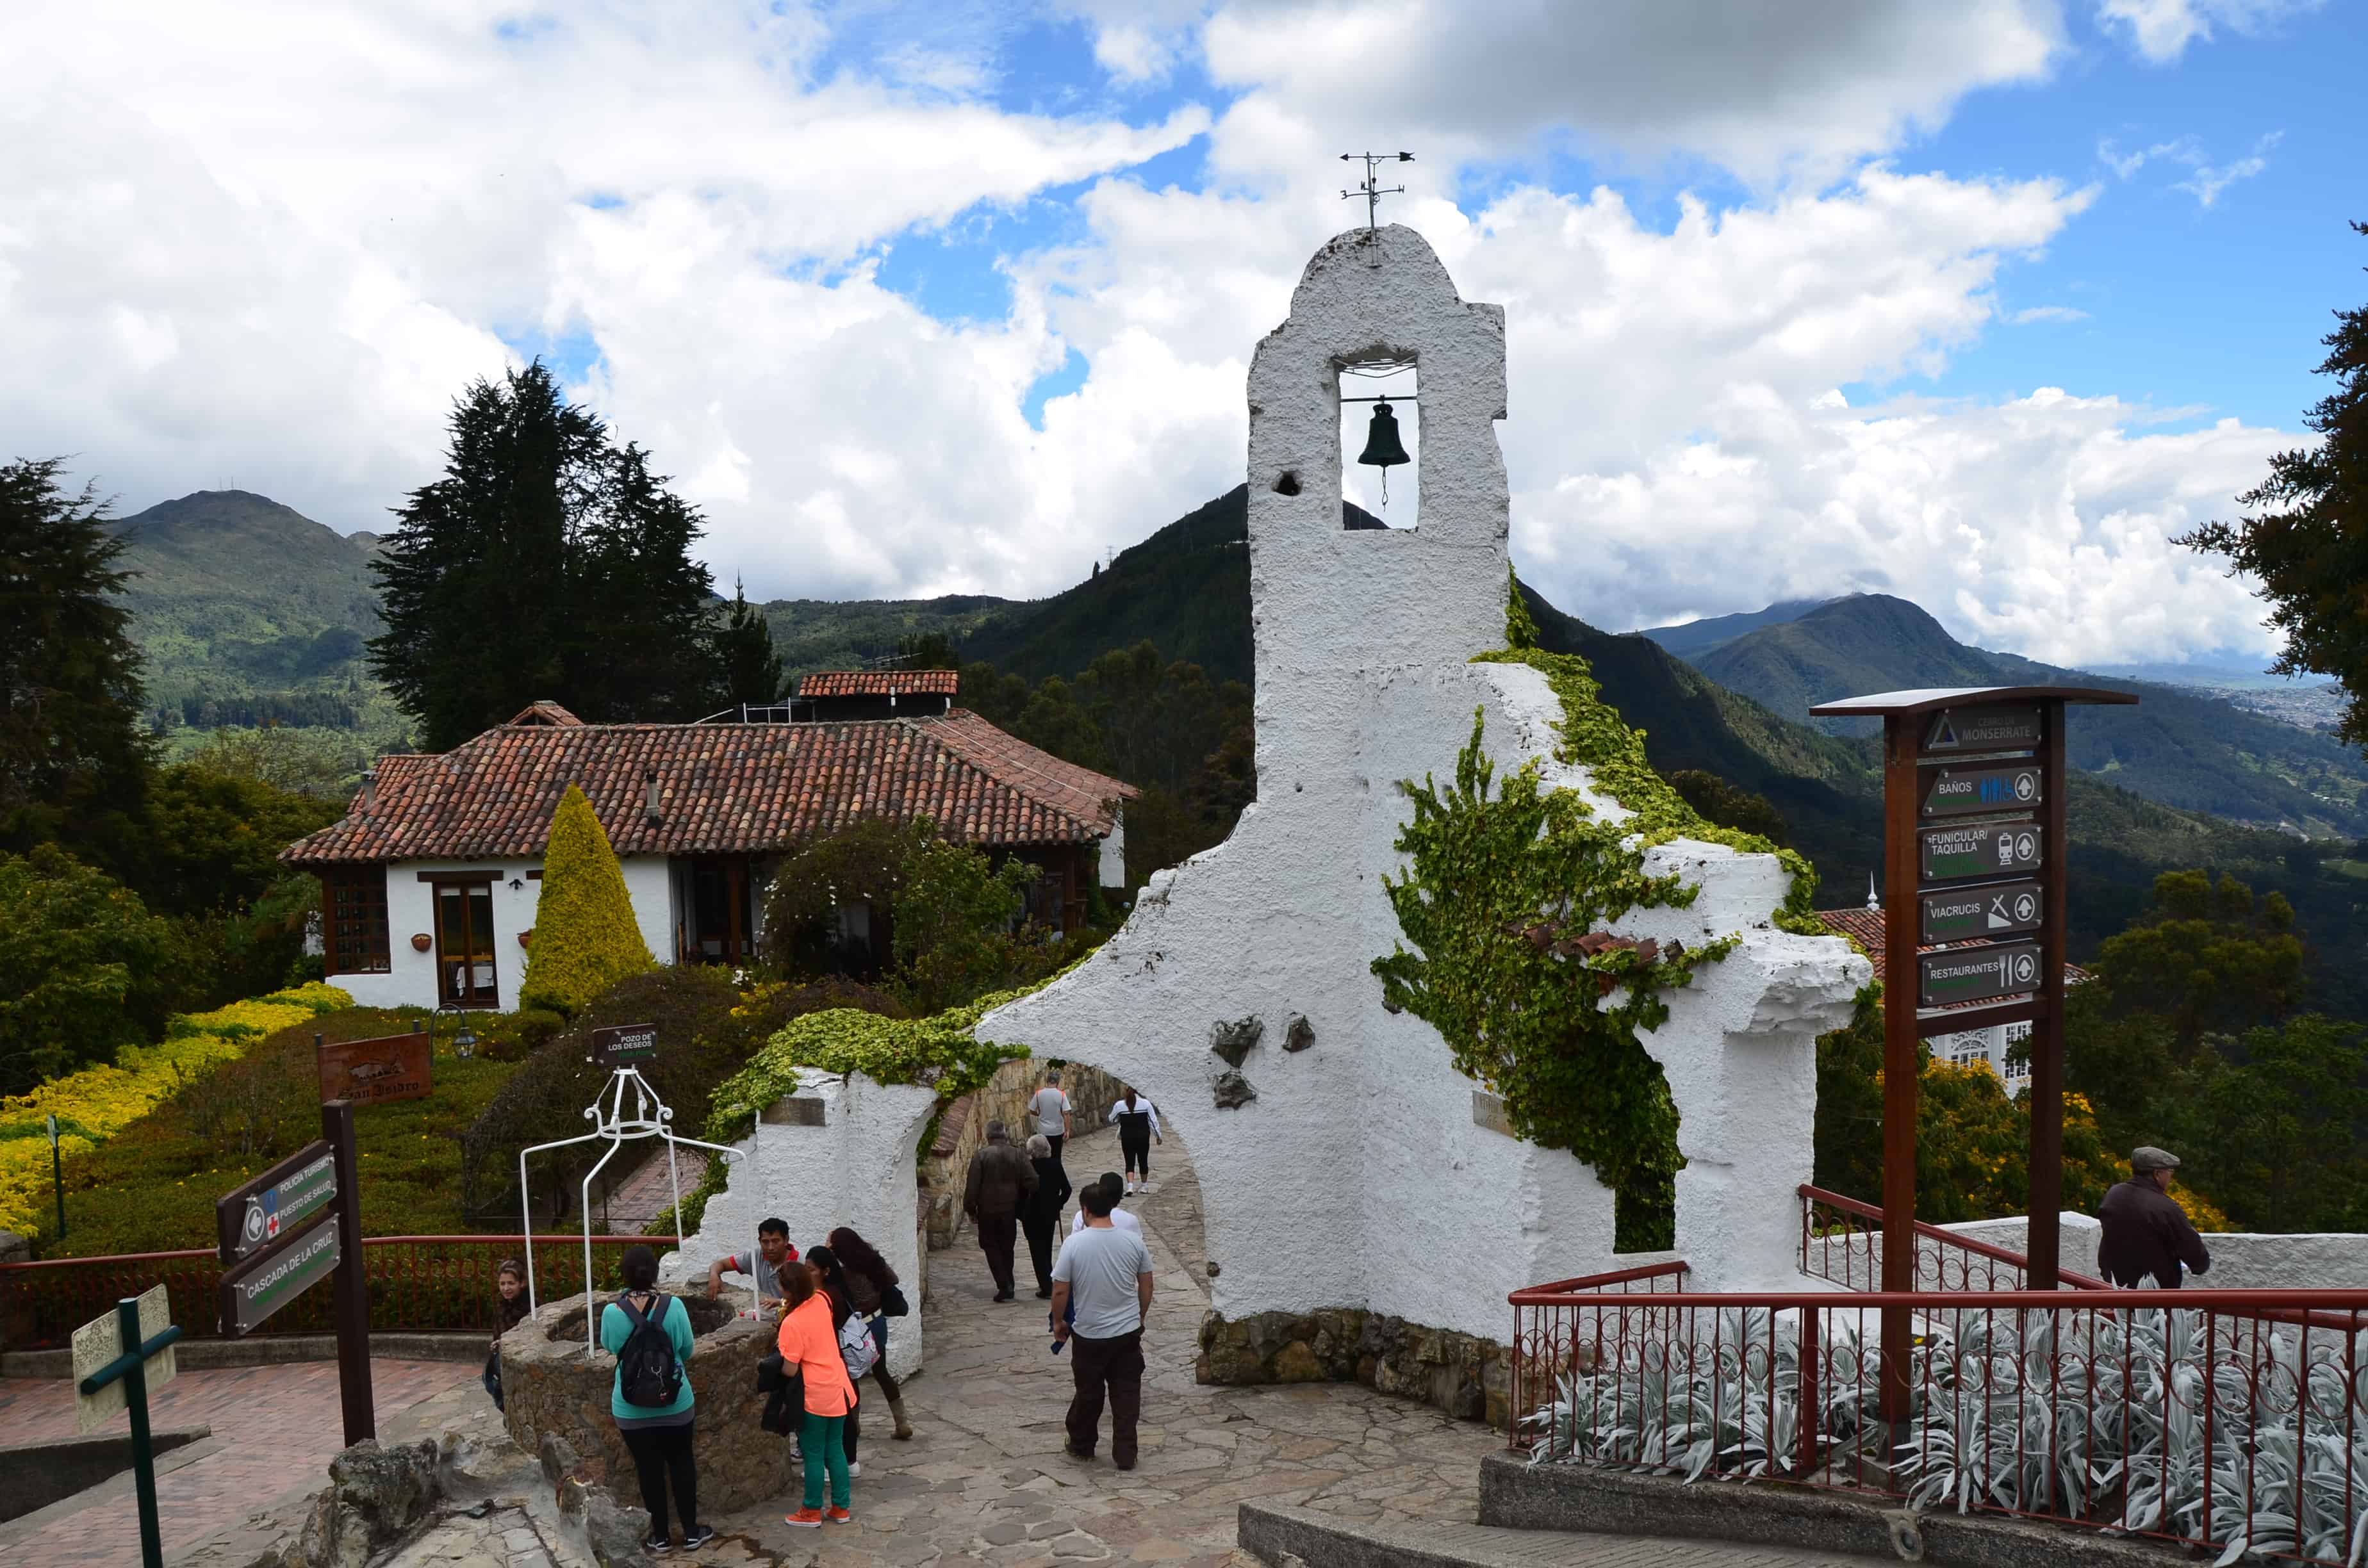 Monserrate in Bogotá, Colombia